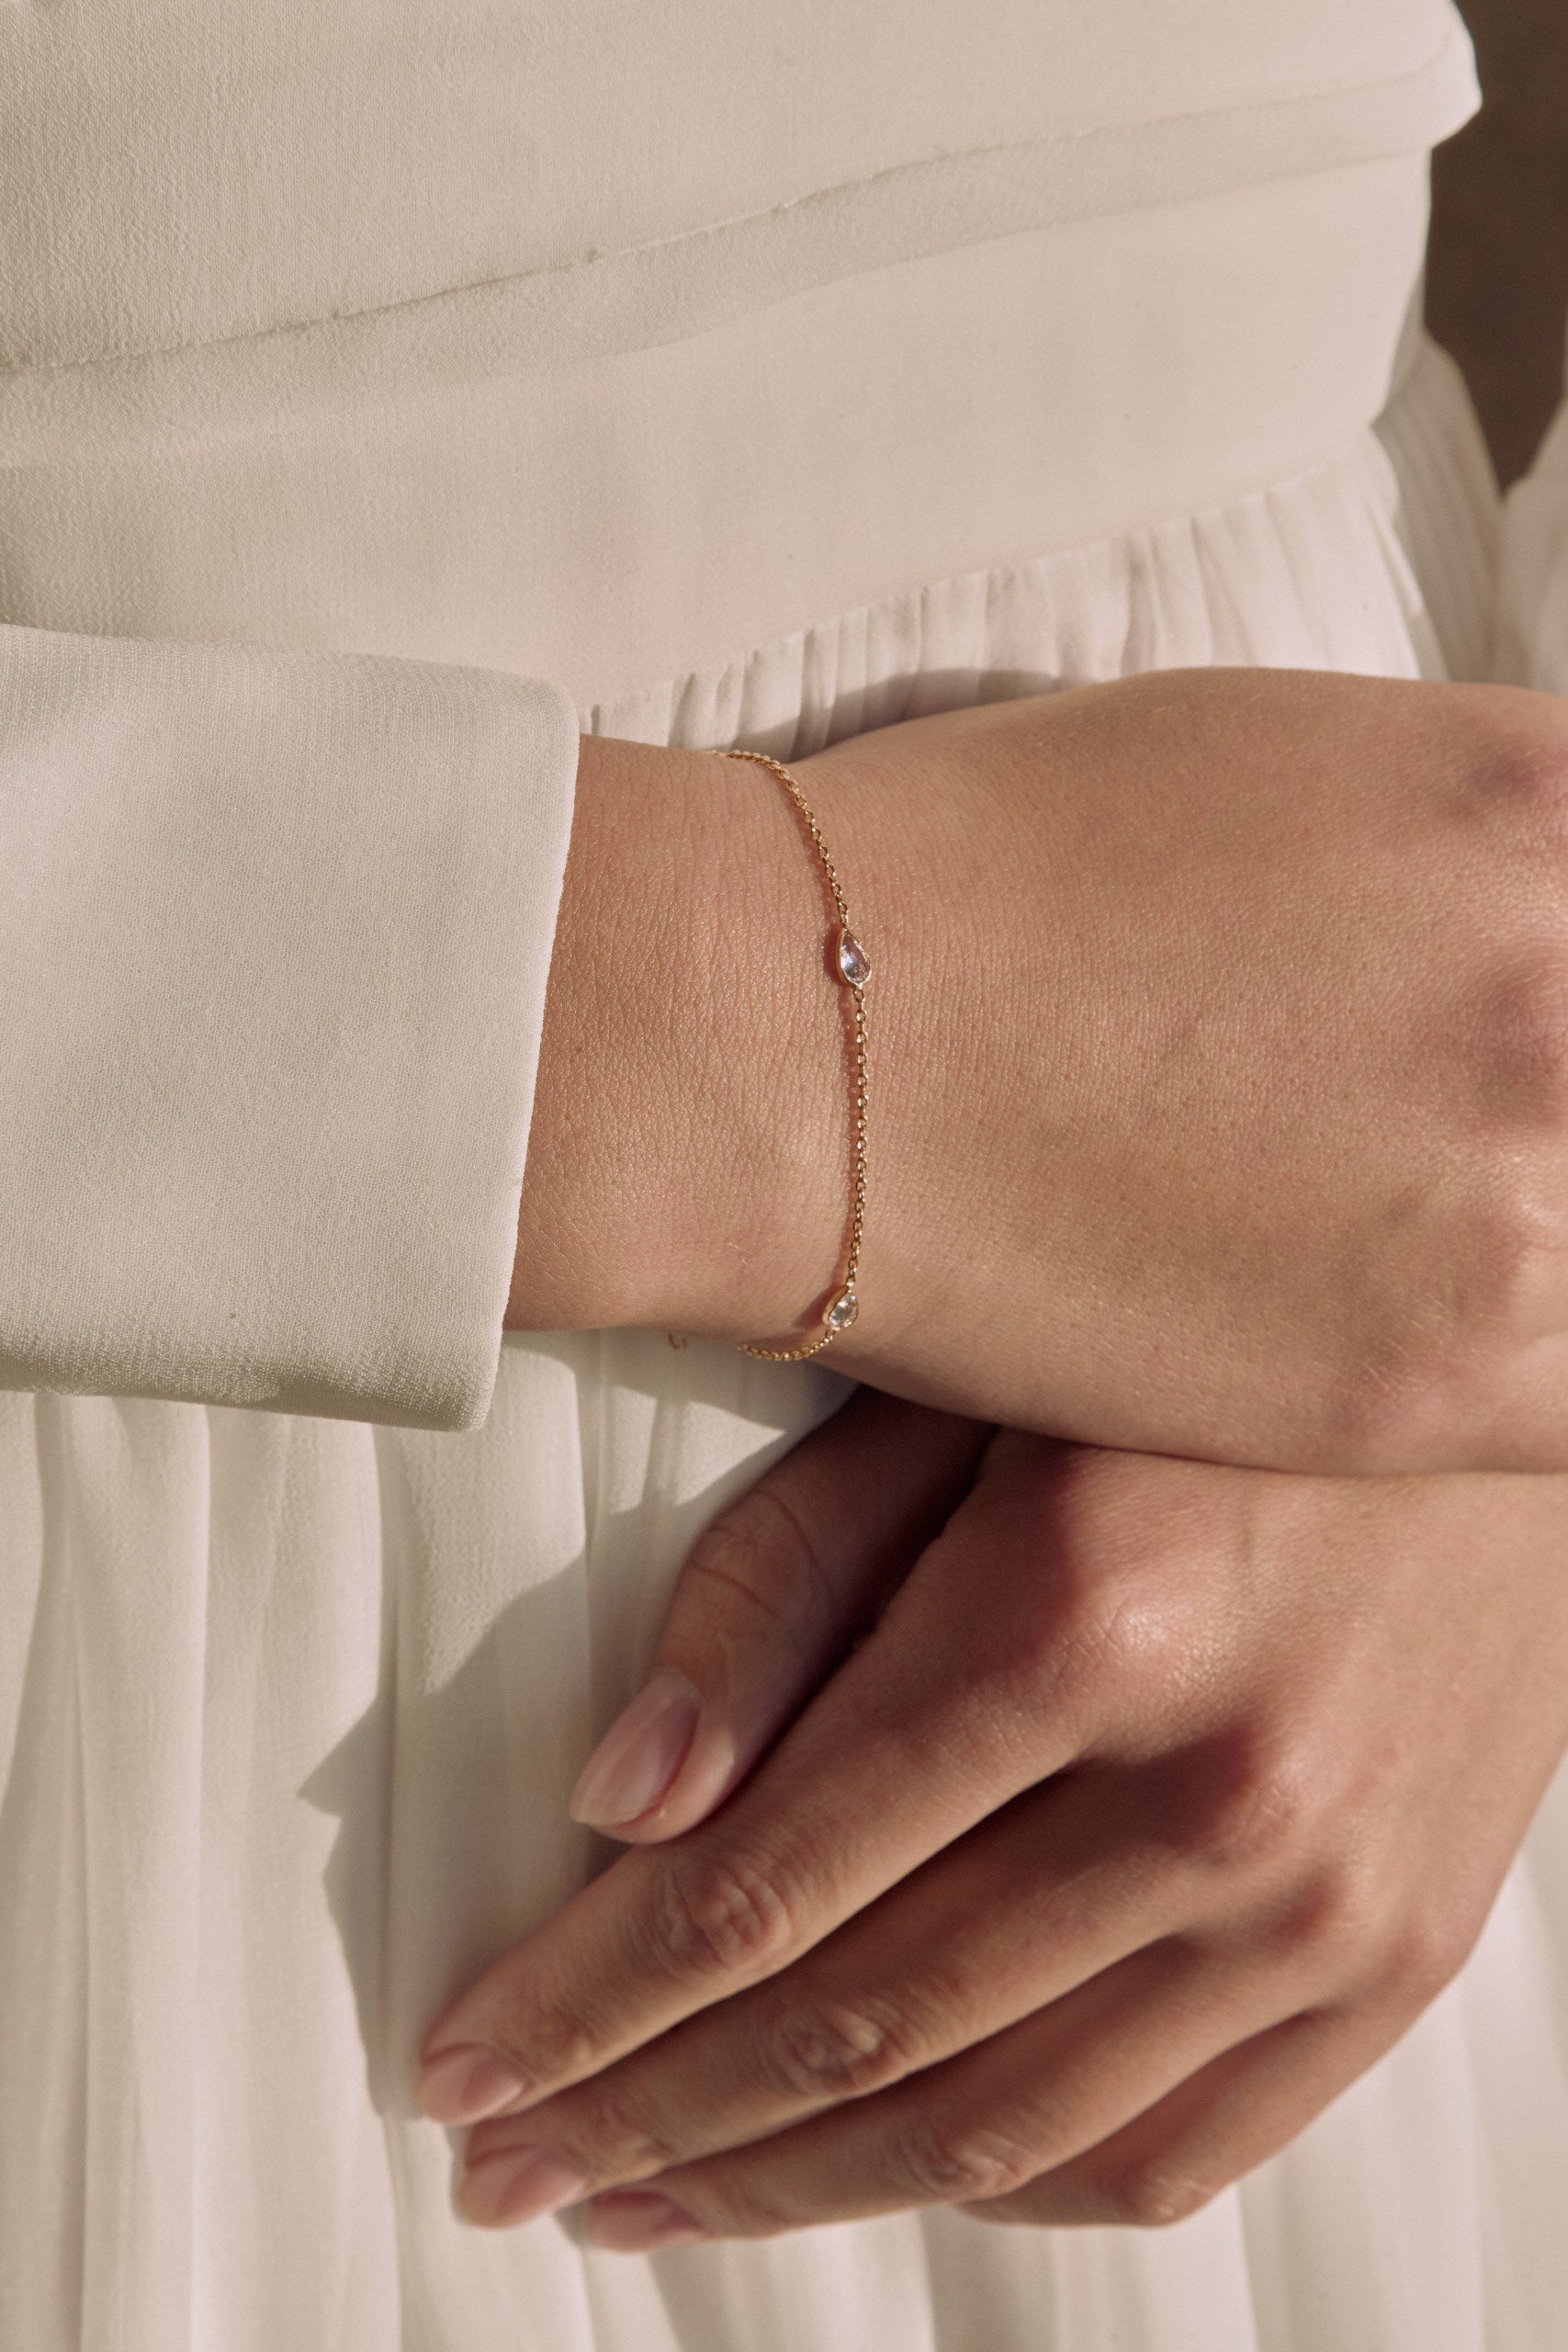 Photo des mains d'une femme montrant un bracelet raffinée avec cristaux délicats